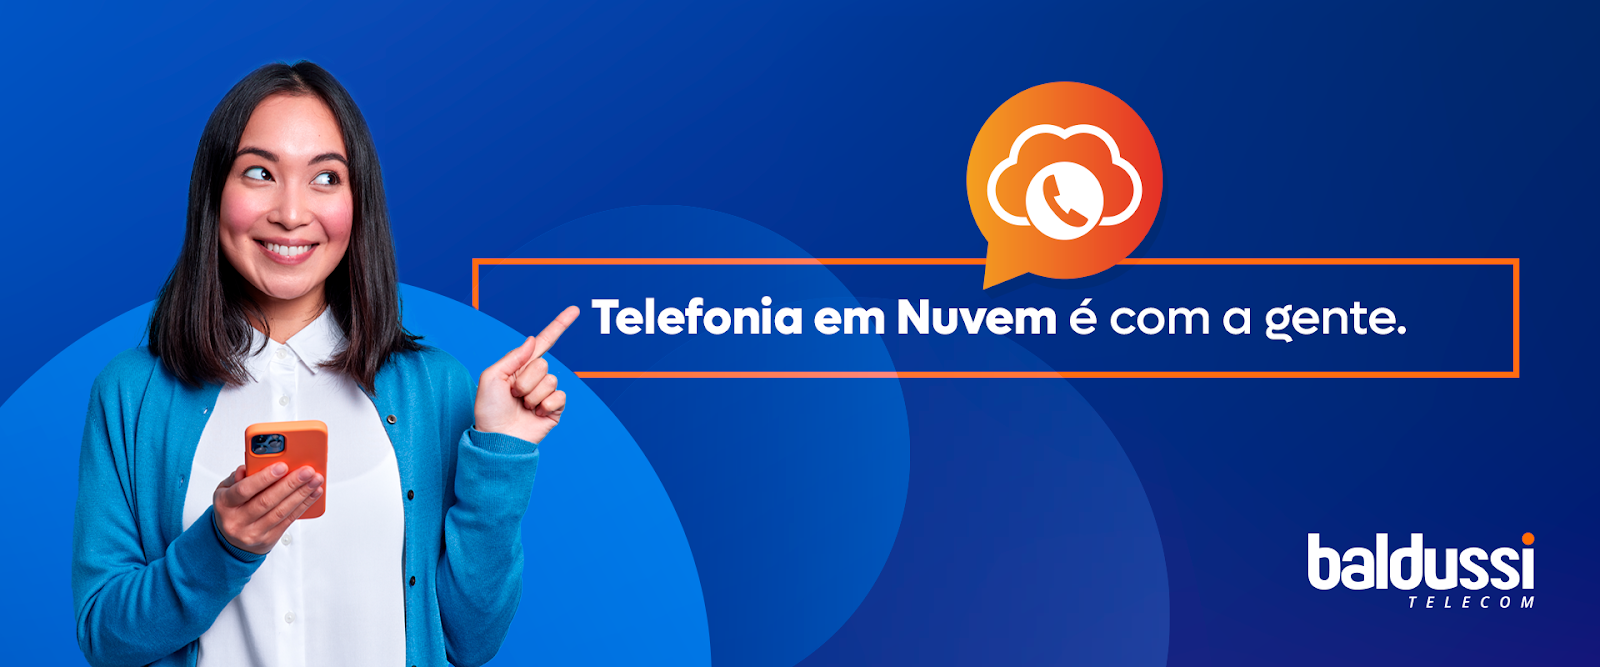 Baldussi Telecom, Telefonia em Nuvem é com a gente!